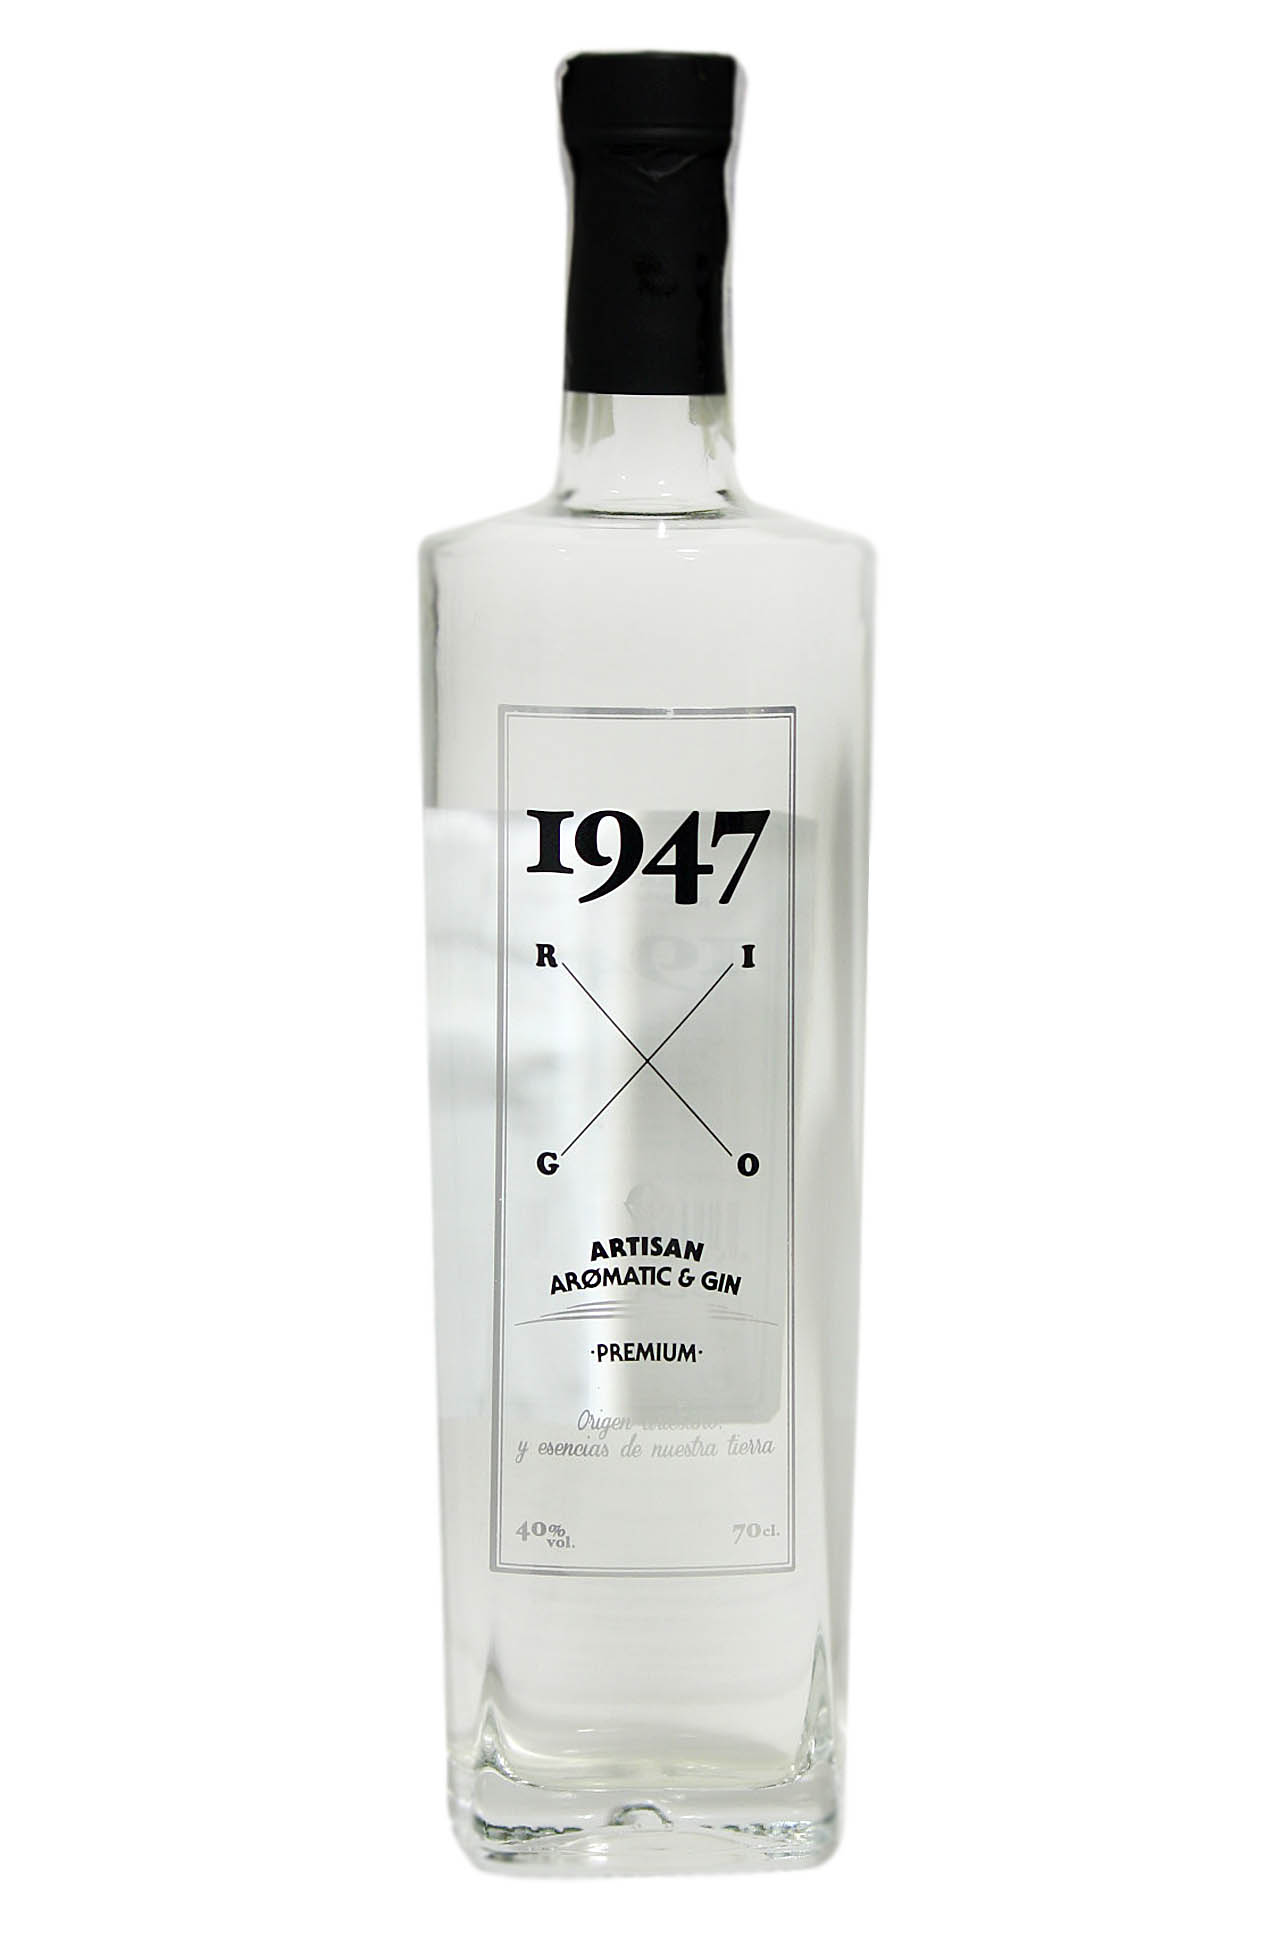 Clasic 1947 gin